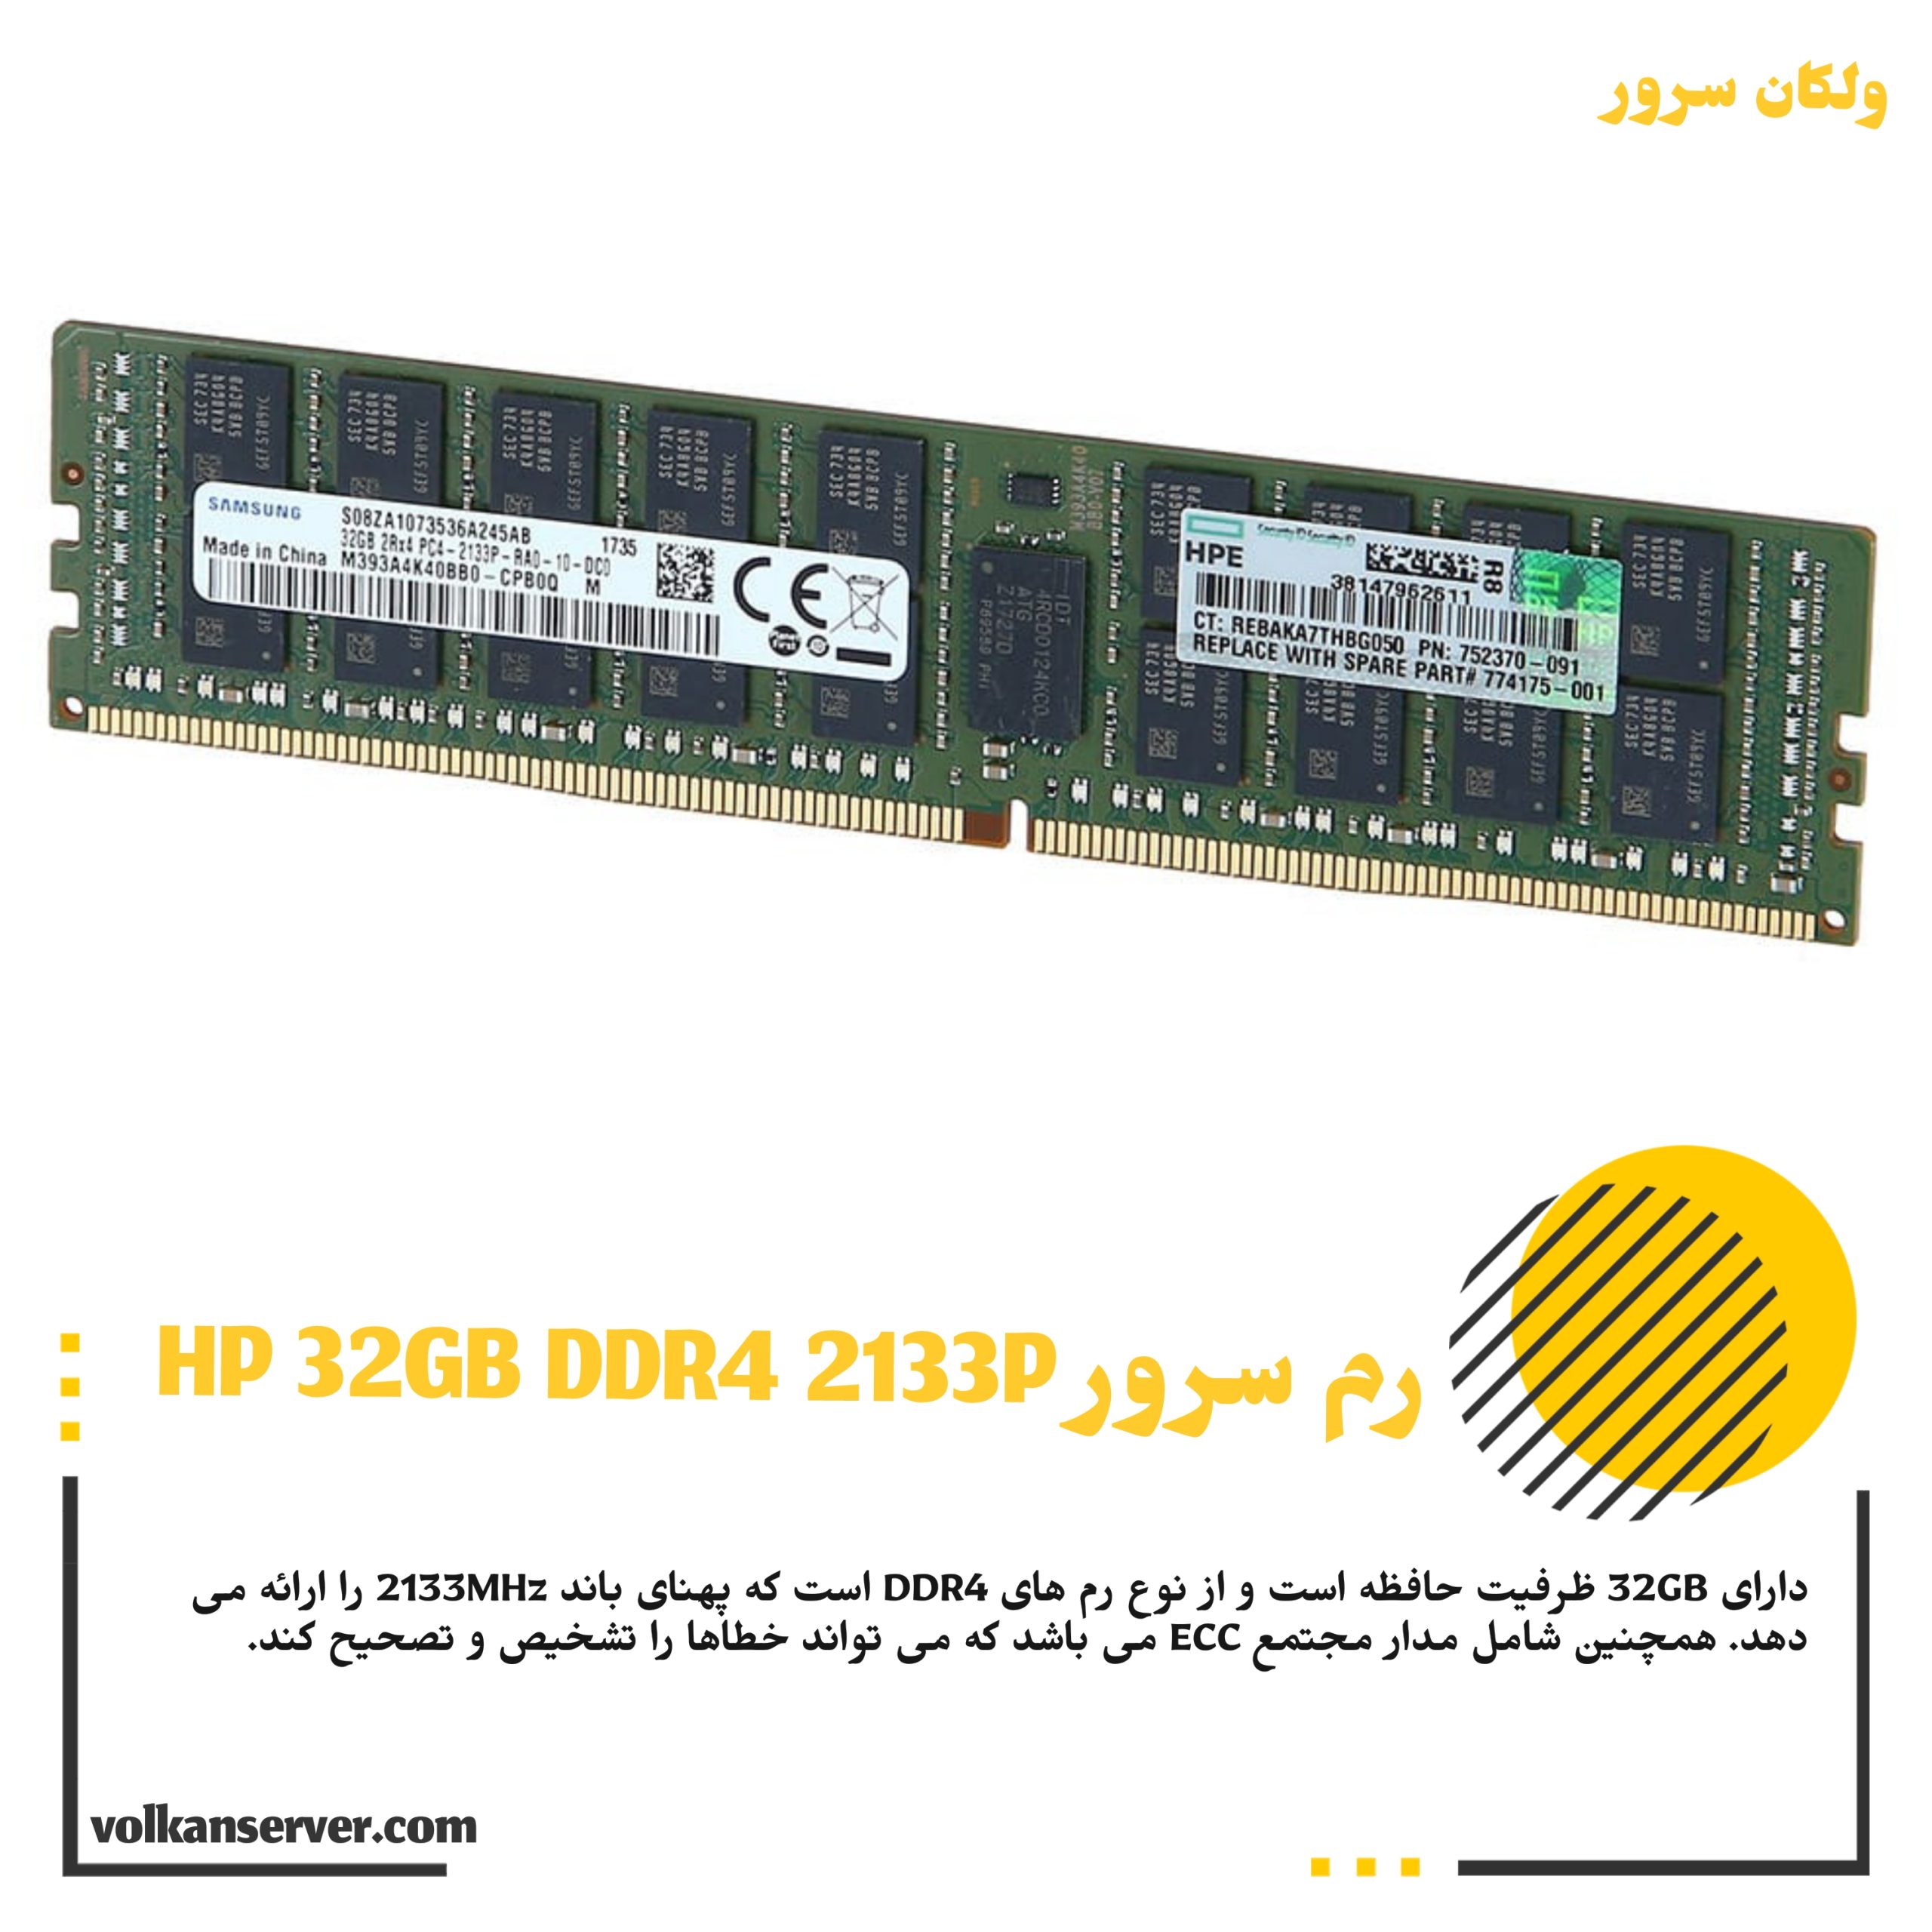 رم سرور HP RAM 32GB DDR4 2133P